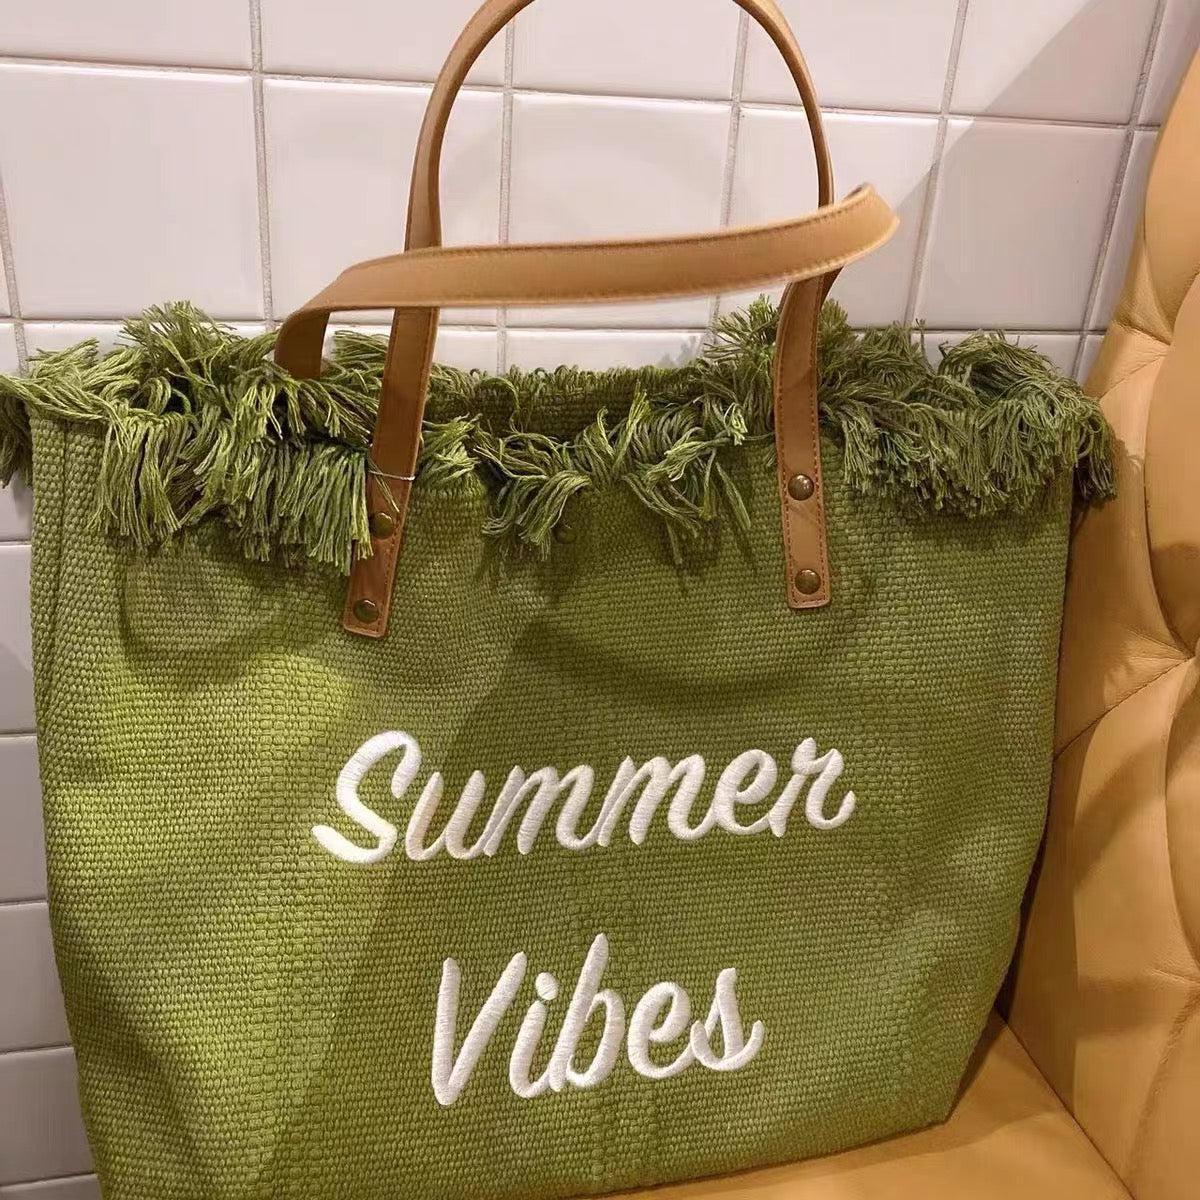 Summer Vibes Canvas Handbag